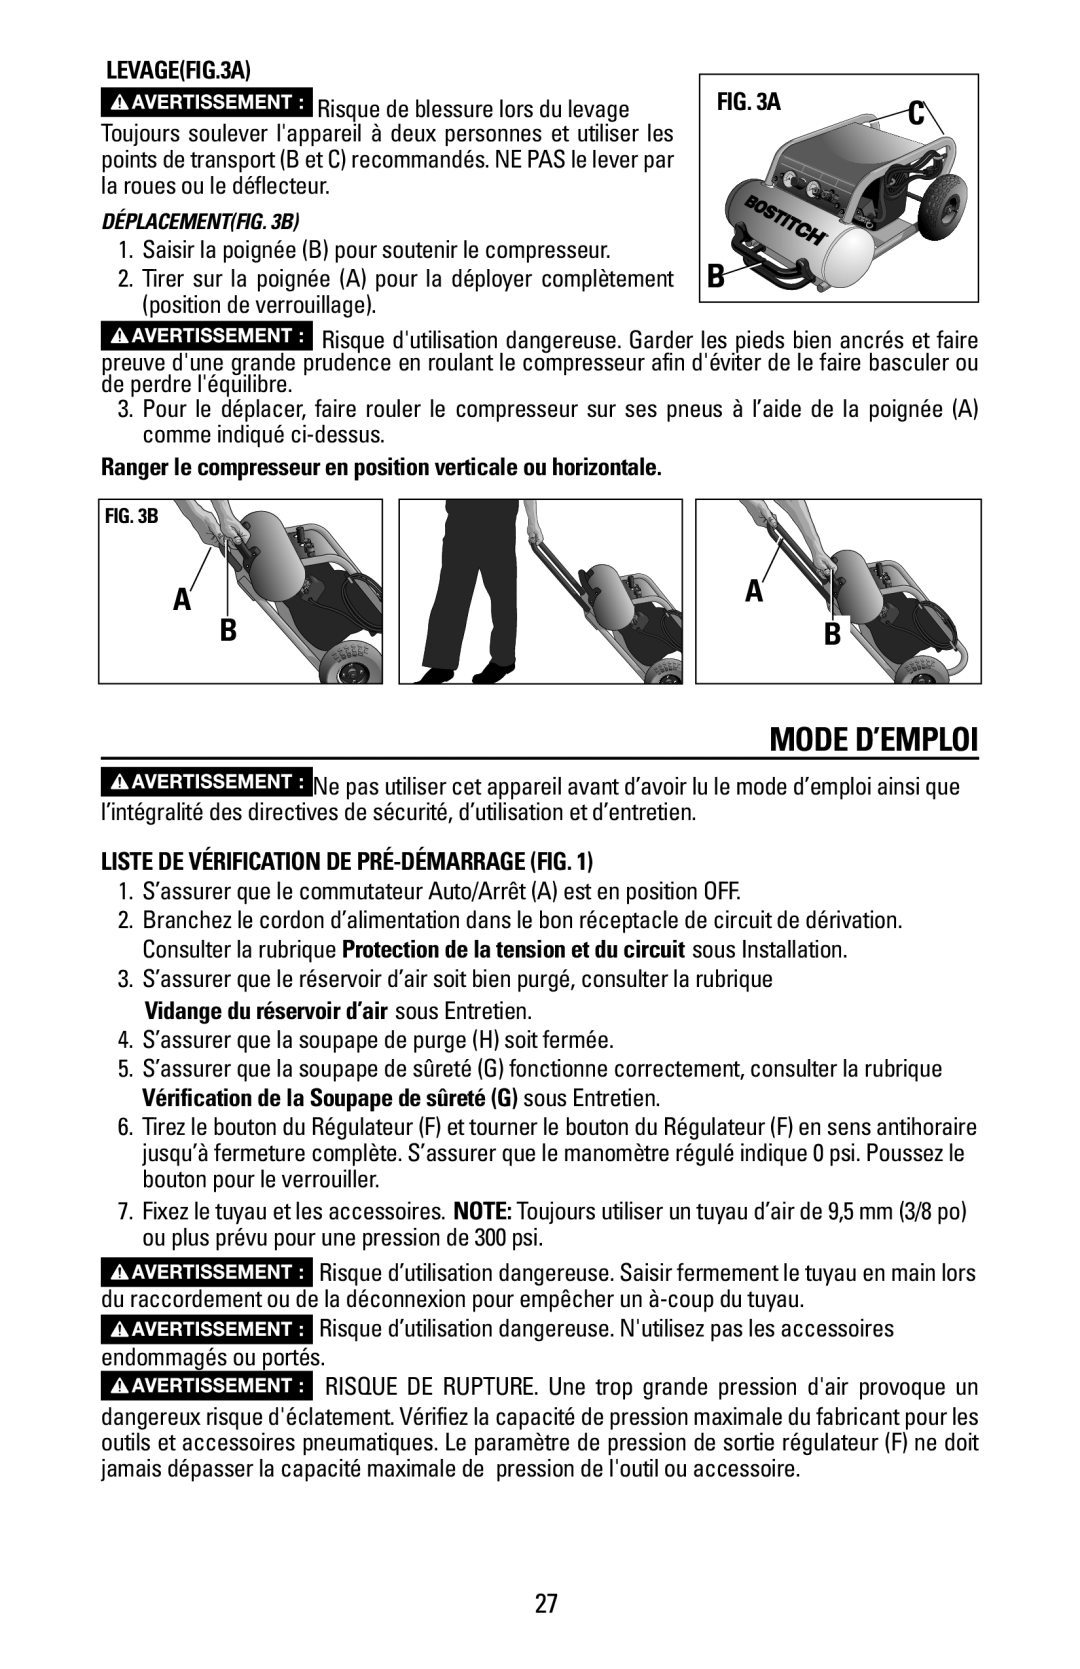 Bostitch CAP1645-OF owner manual Mode D’Emploi, LEVAGEFIG.3A, Liste De Vérification De Pré-Démarragefig 